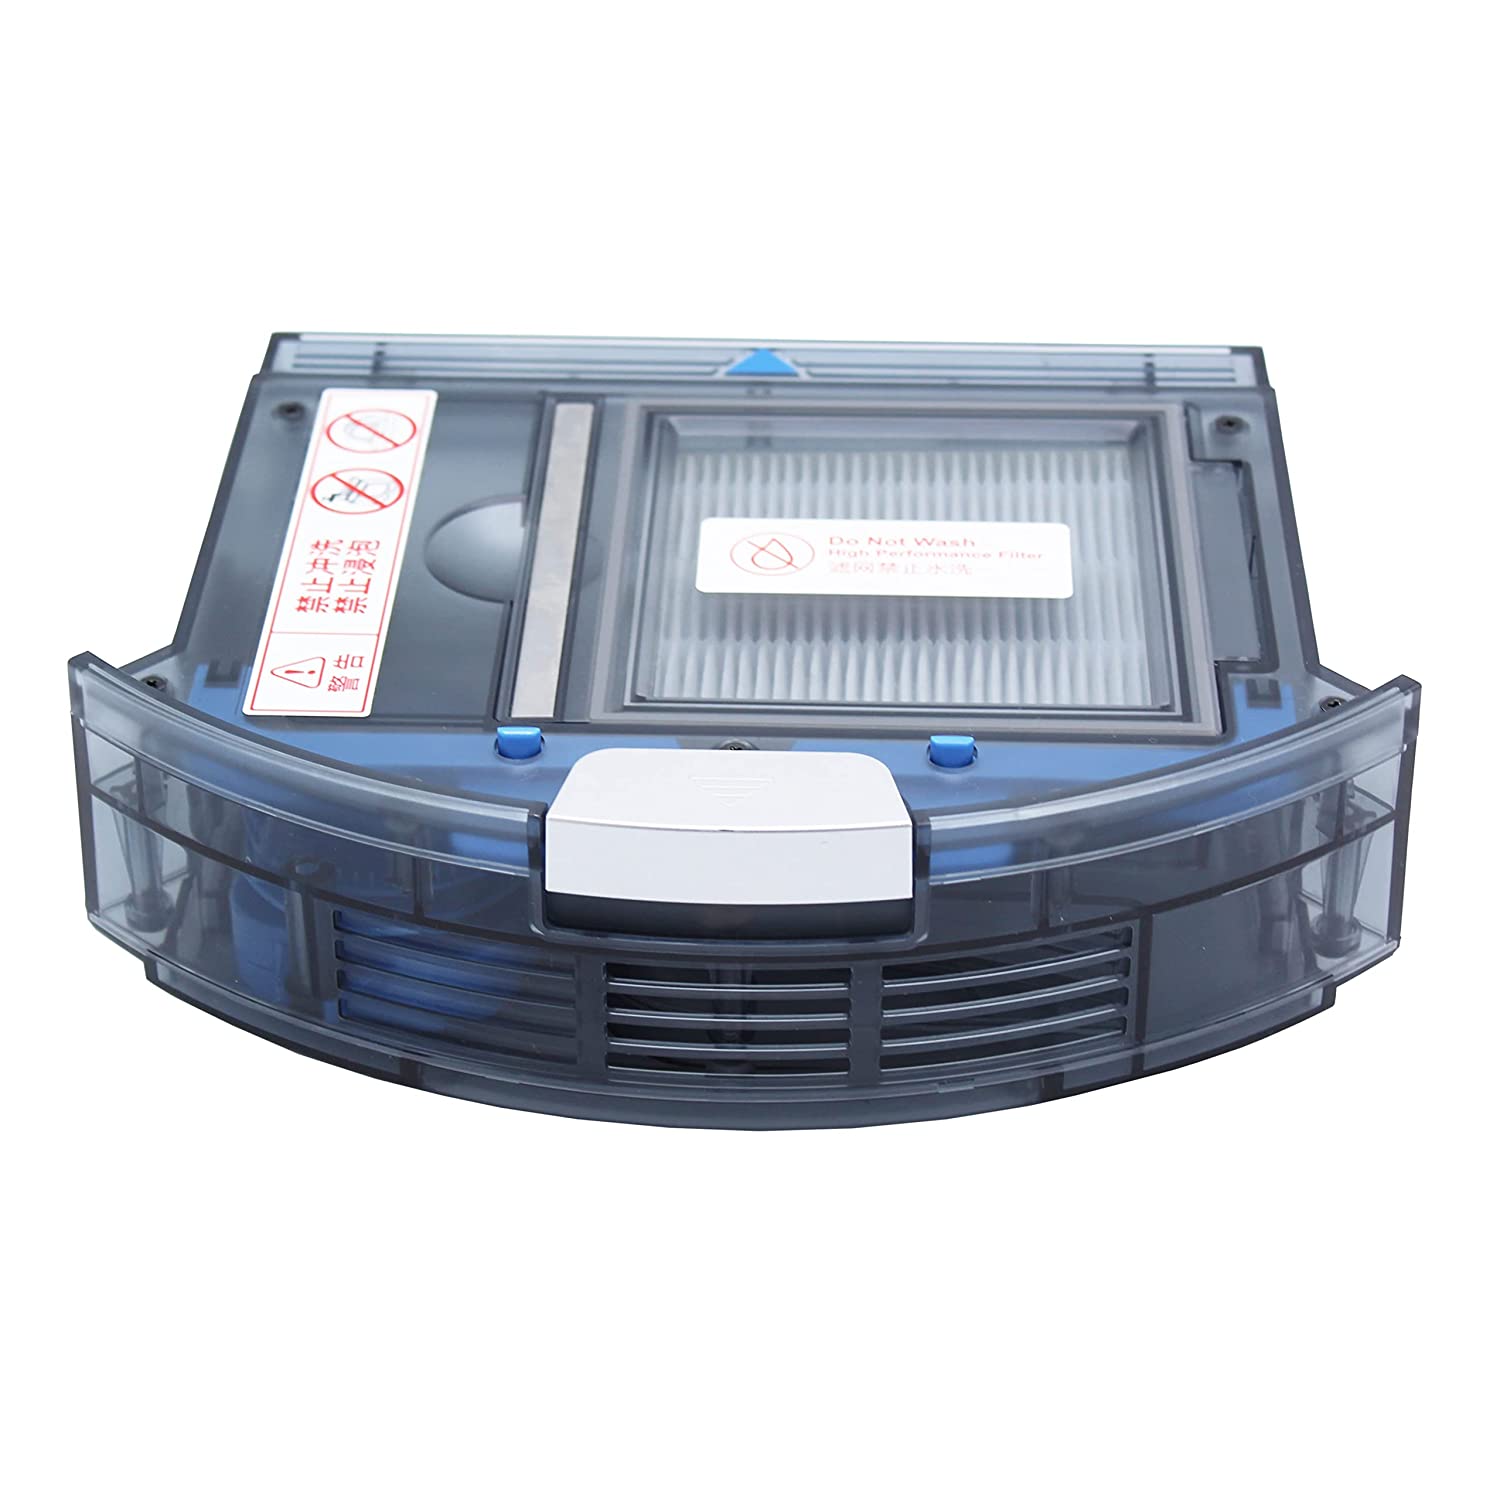 Robotic Vacuum Cleaner iLife X750 Dust Box Buy Online